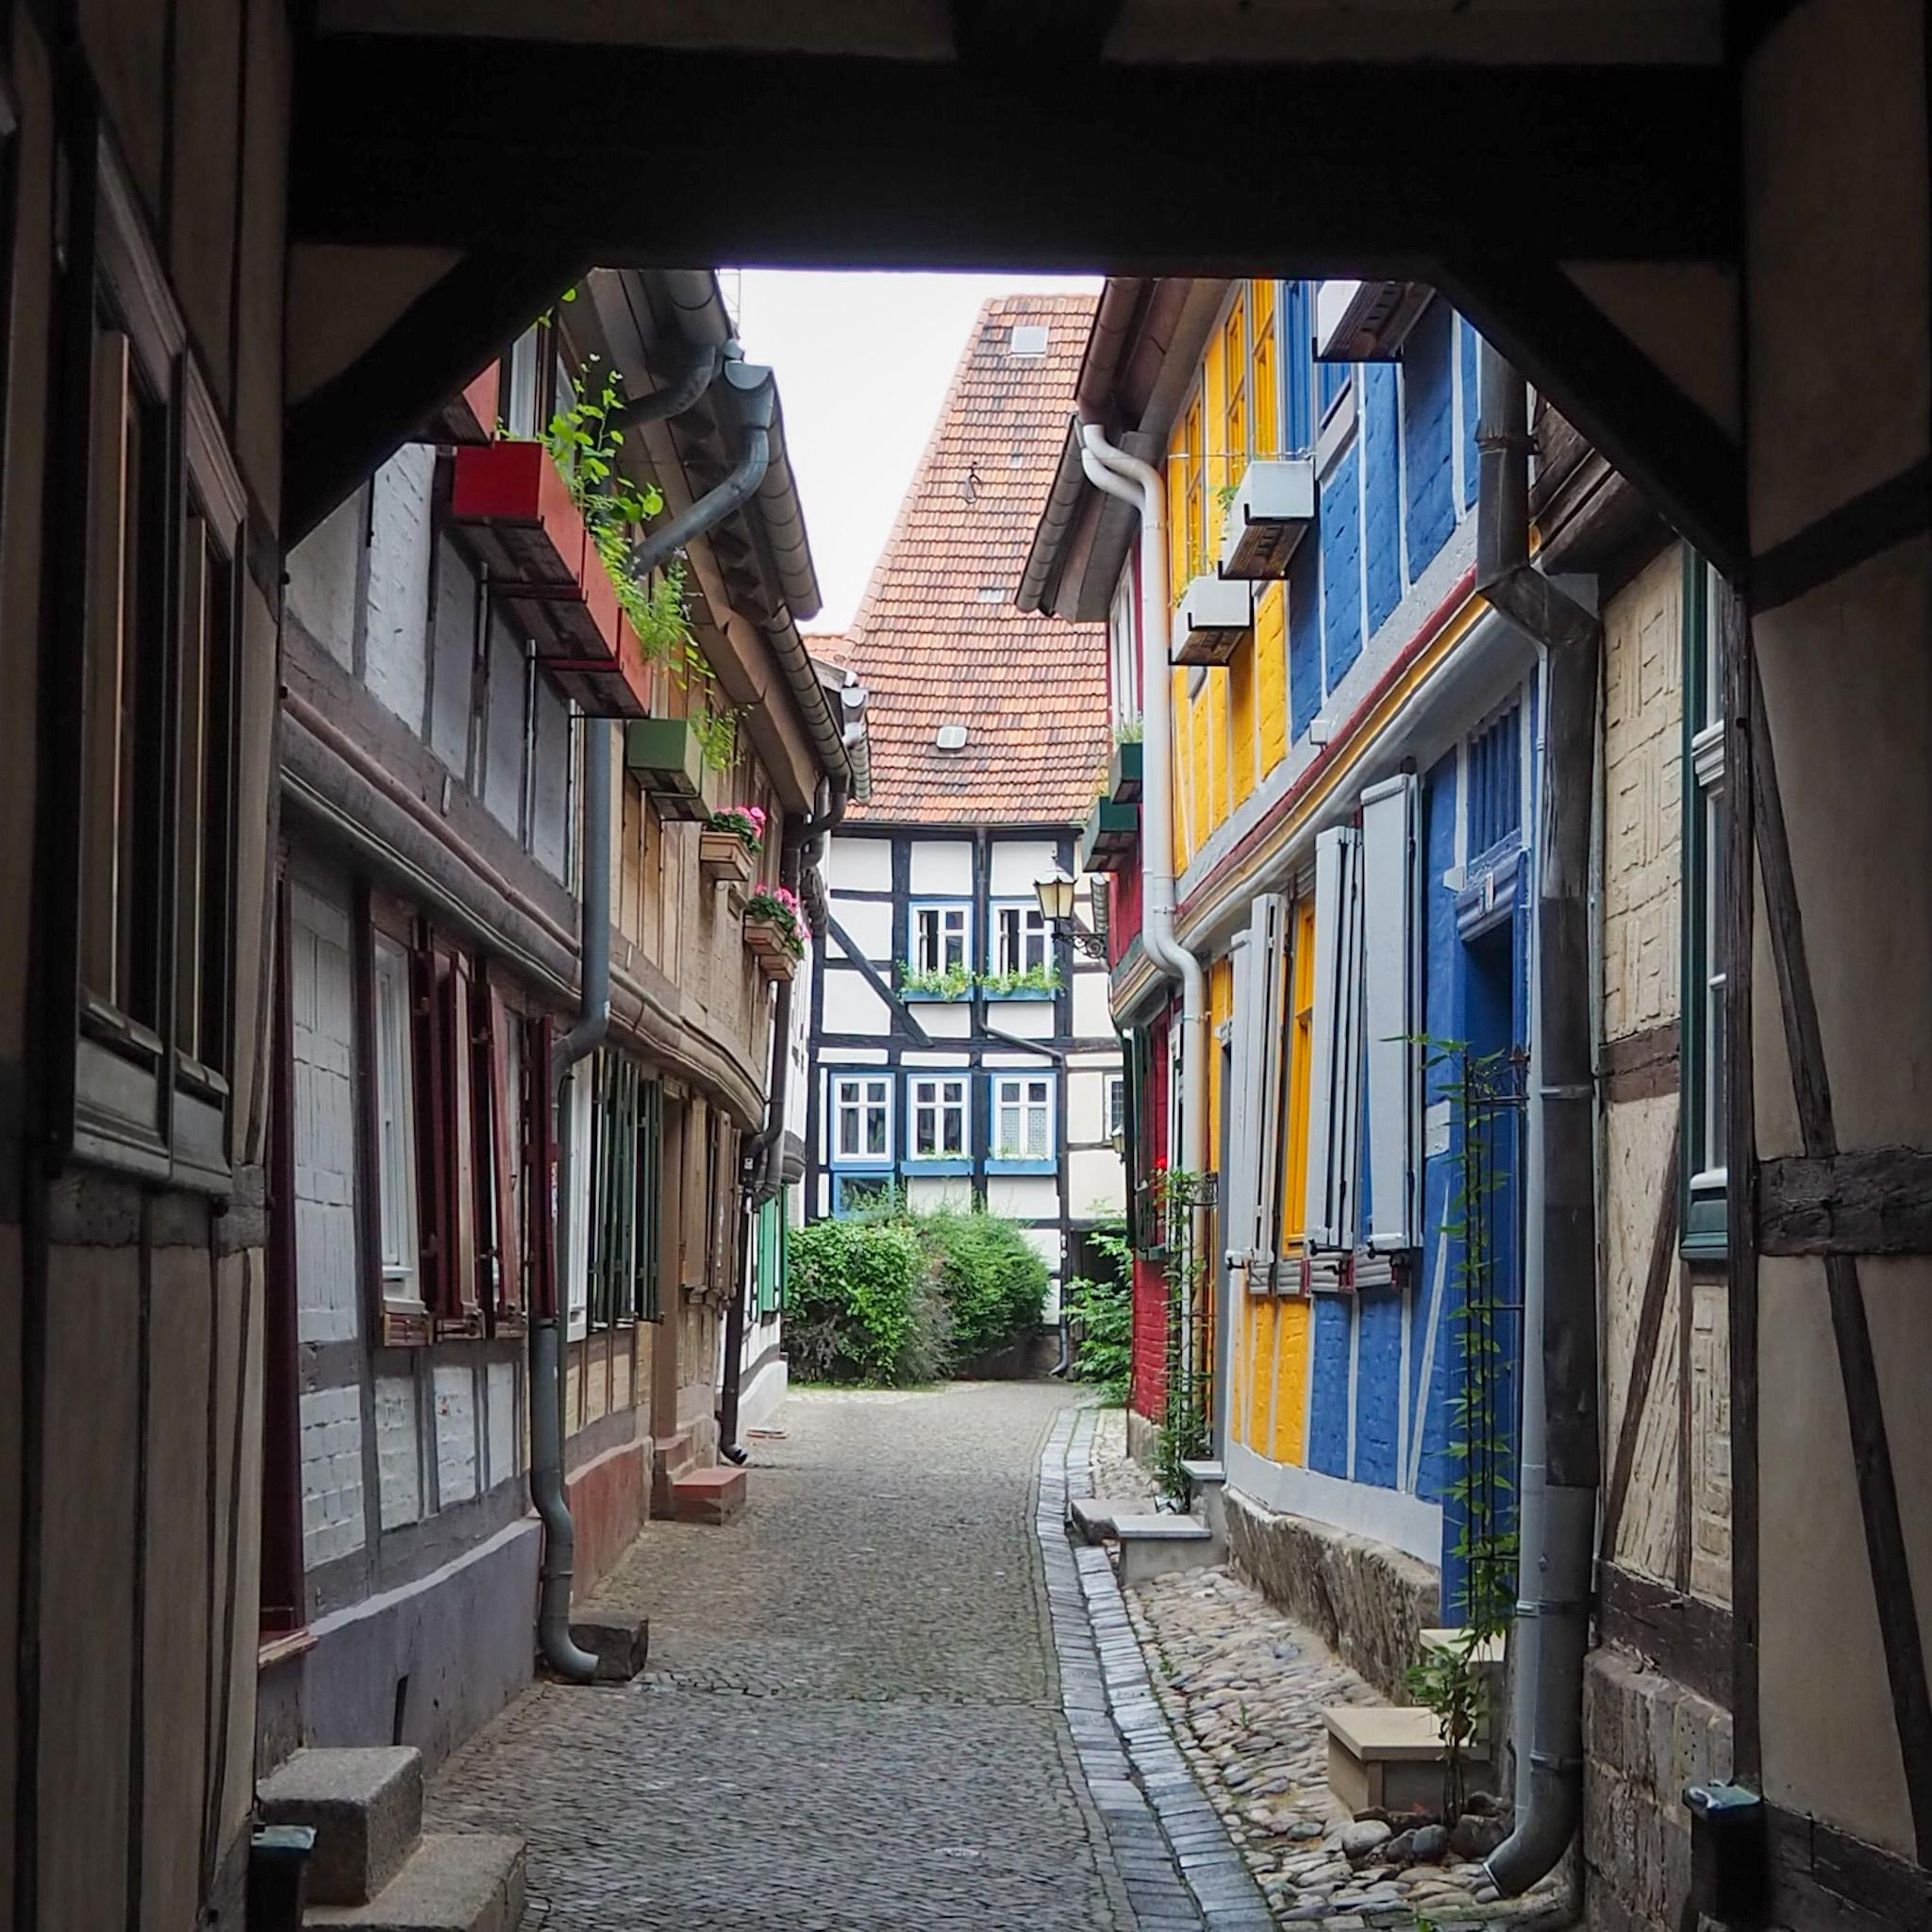 Ach Quedlingburg, vielleicht zieh ich doch irgendwann in deine wunderschöne Altstadt #travelchallenge #heimatentdecken 